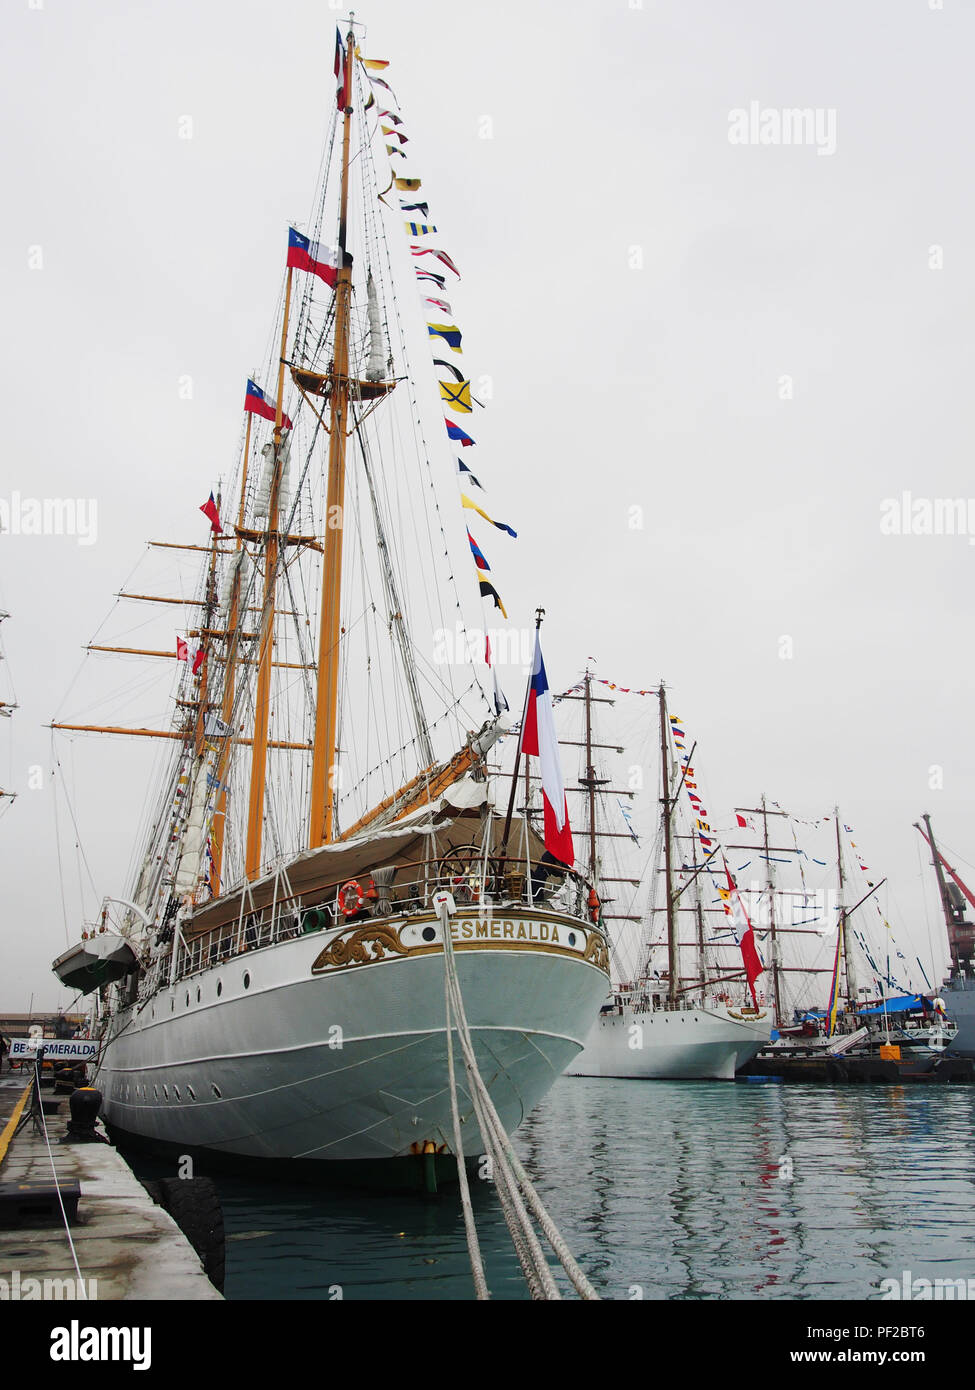 Stern der Esmeralda aus Chile günstig auf das Dock während der "nautischen Velas Latinoamerica 2018" Veranstaltung, die in Lima Peru stattfindet. Die Veranstaltung versammelt 8 Schulung Segelschiffe aus lateinamerikanischen Ländern. Stockfoto